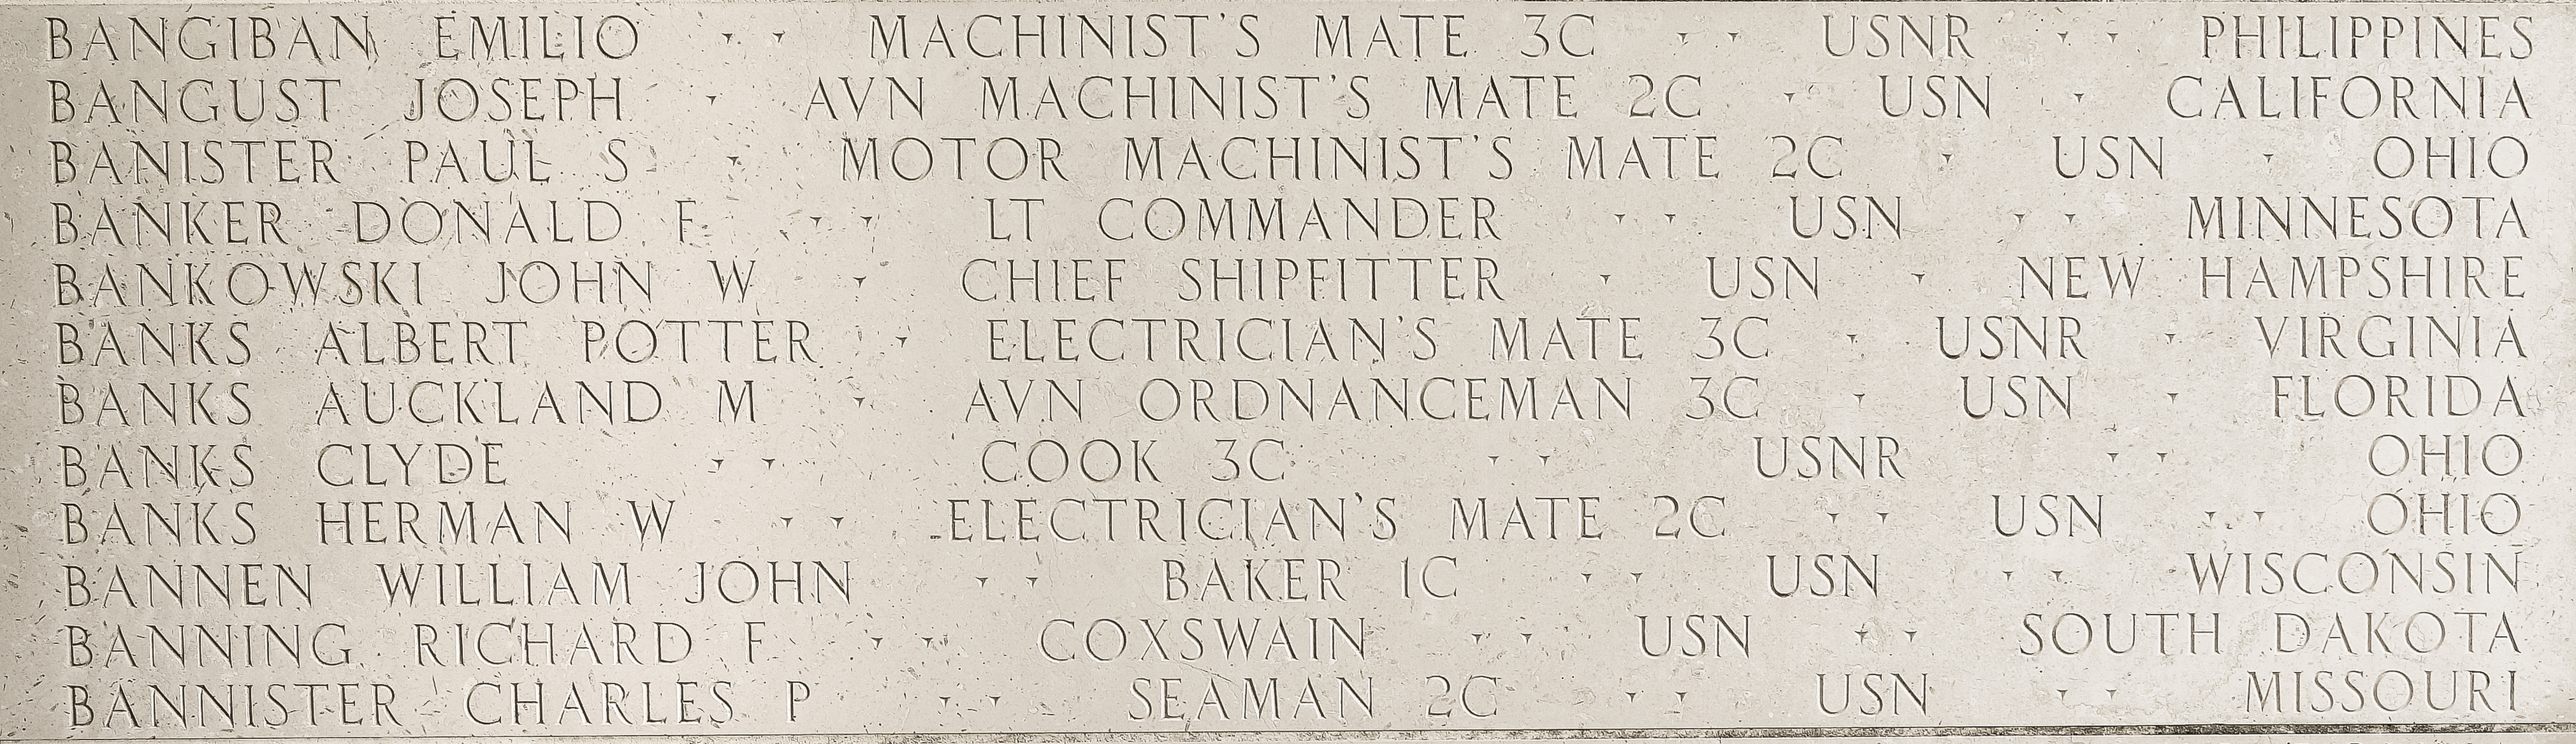 Albert Potter Banks, Electrician's Mate Third Class